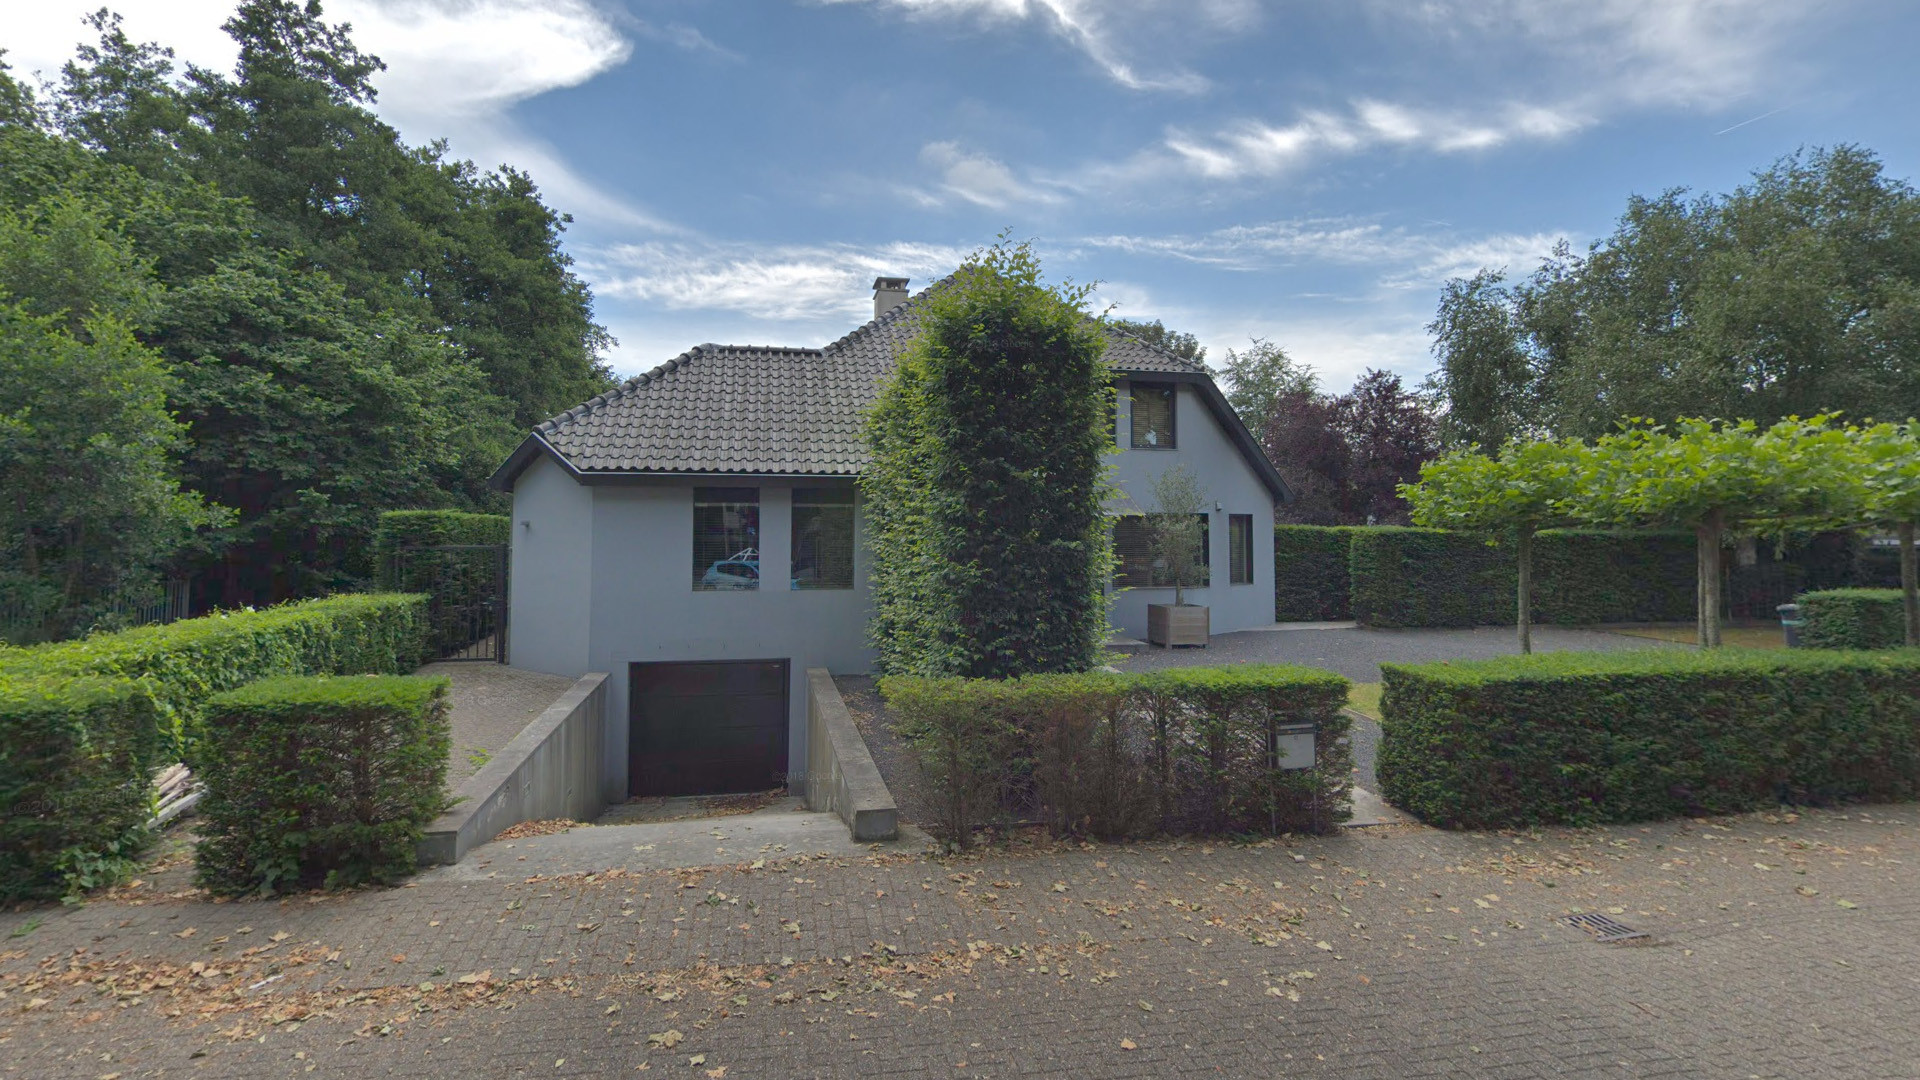 Daley Blind koopt miljoenen villa nabij Amsterdam. Zie foto's 2